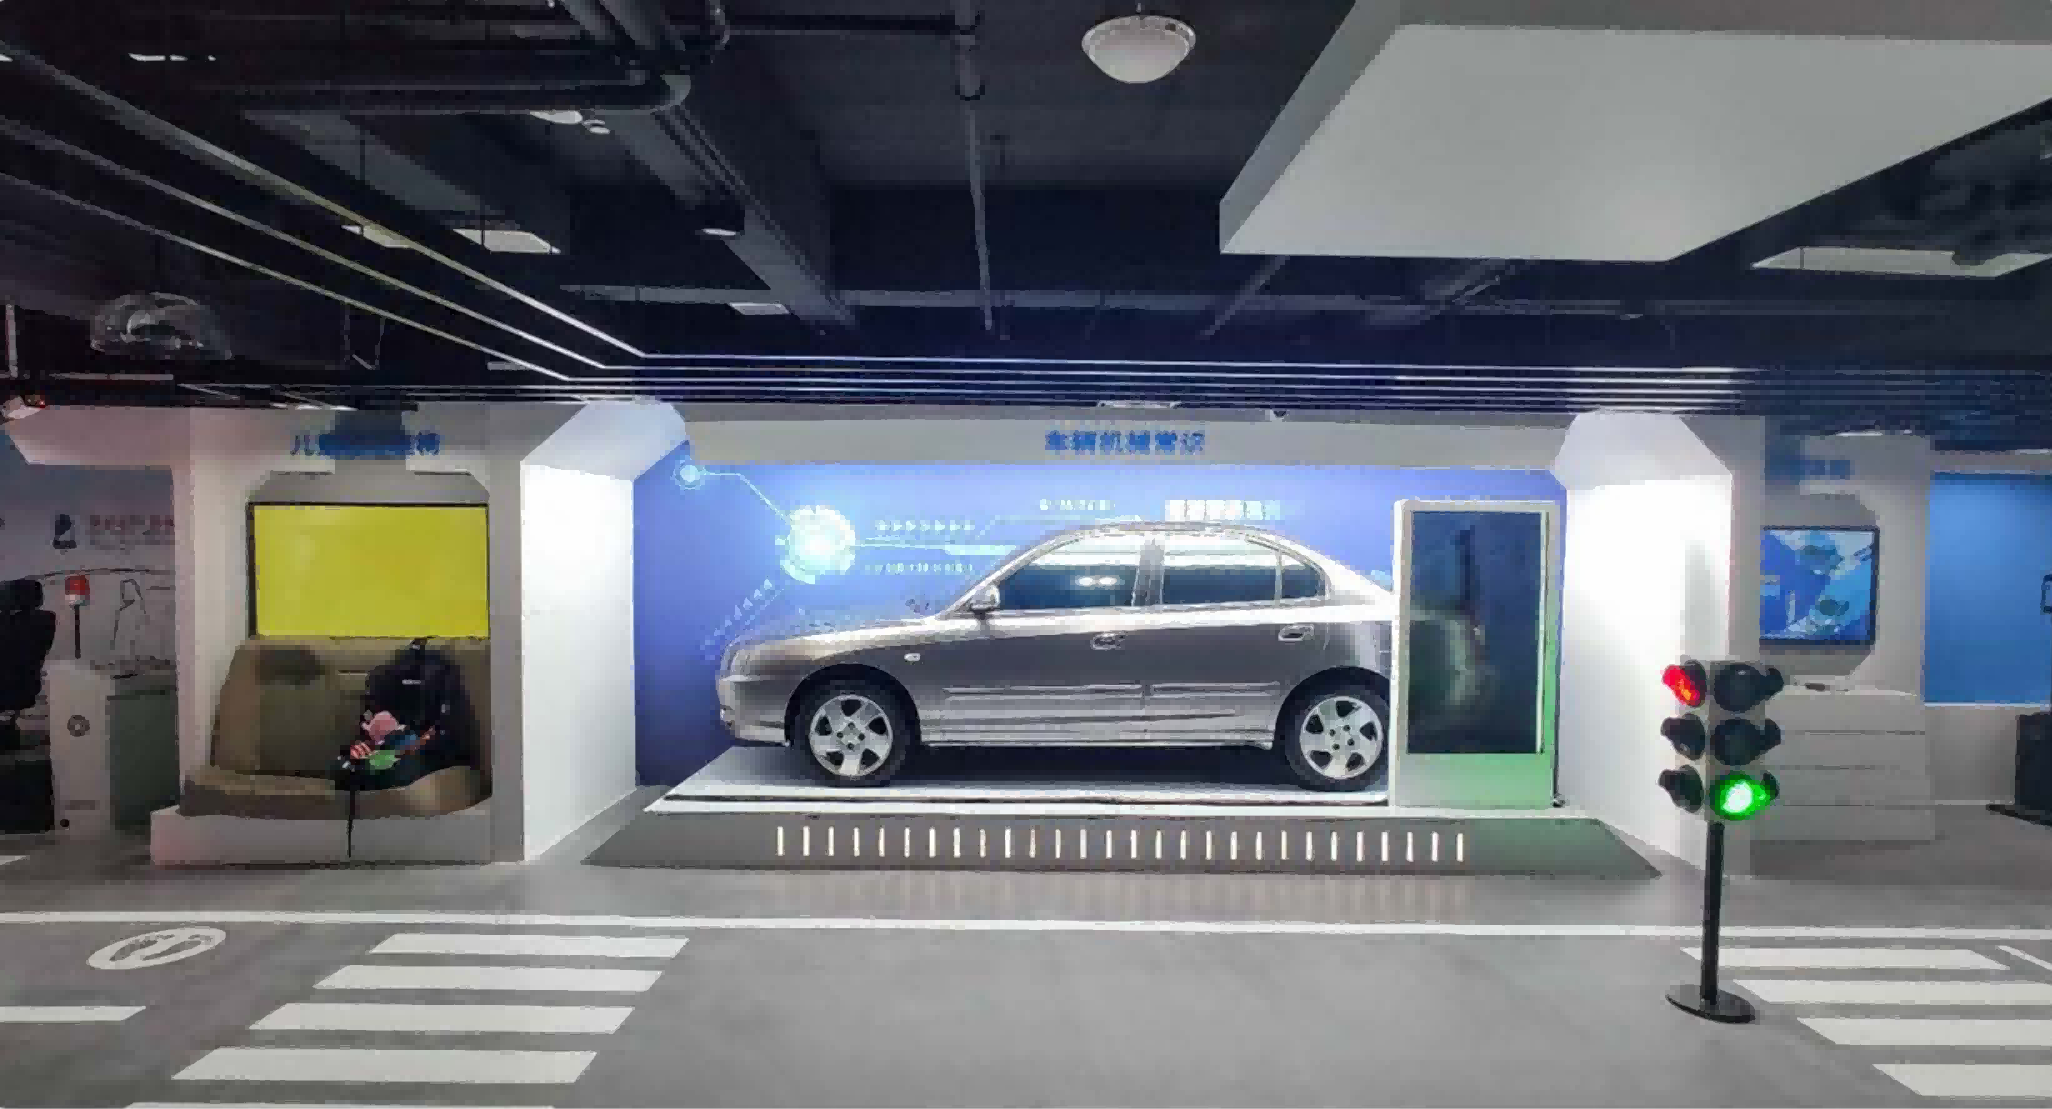 重庆渝中区交通安全教育基地面积约600m²,含安全教育|VR模拟体验等四个模块